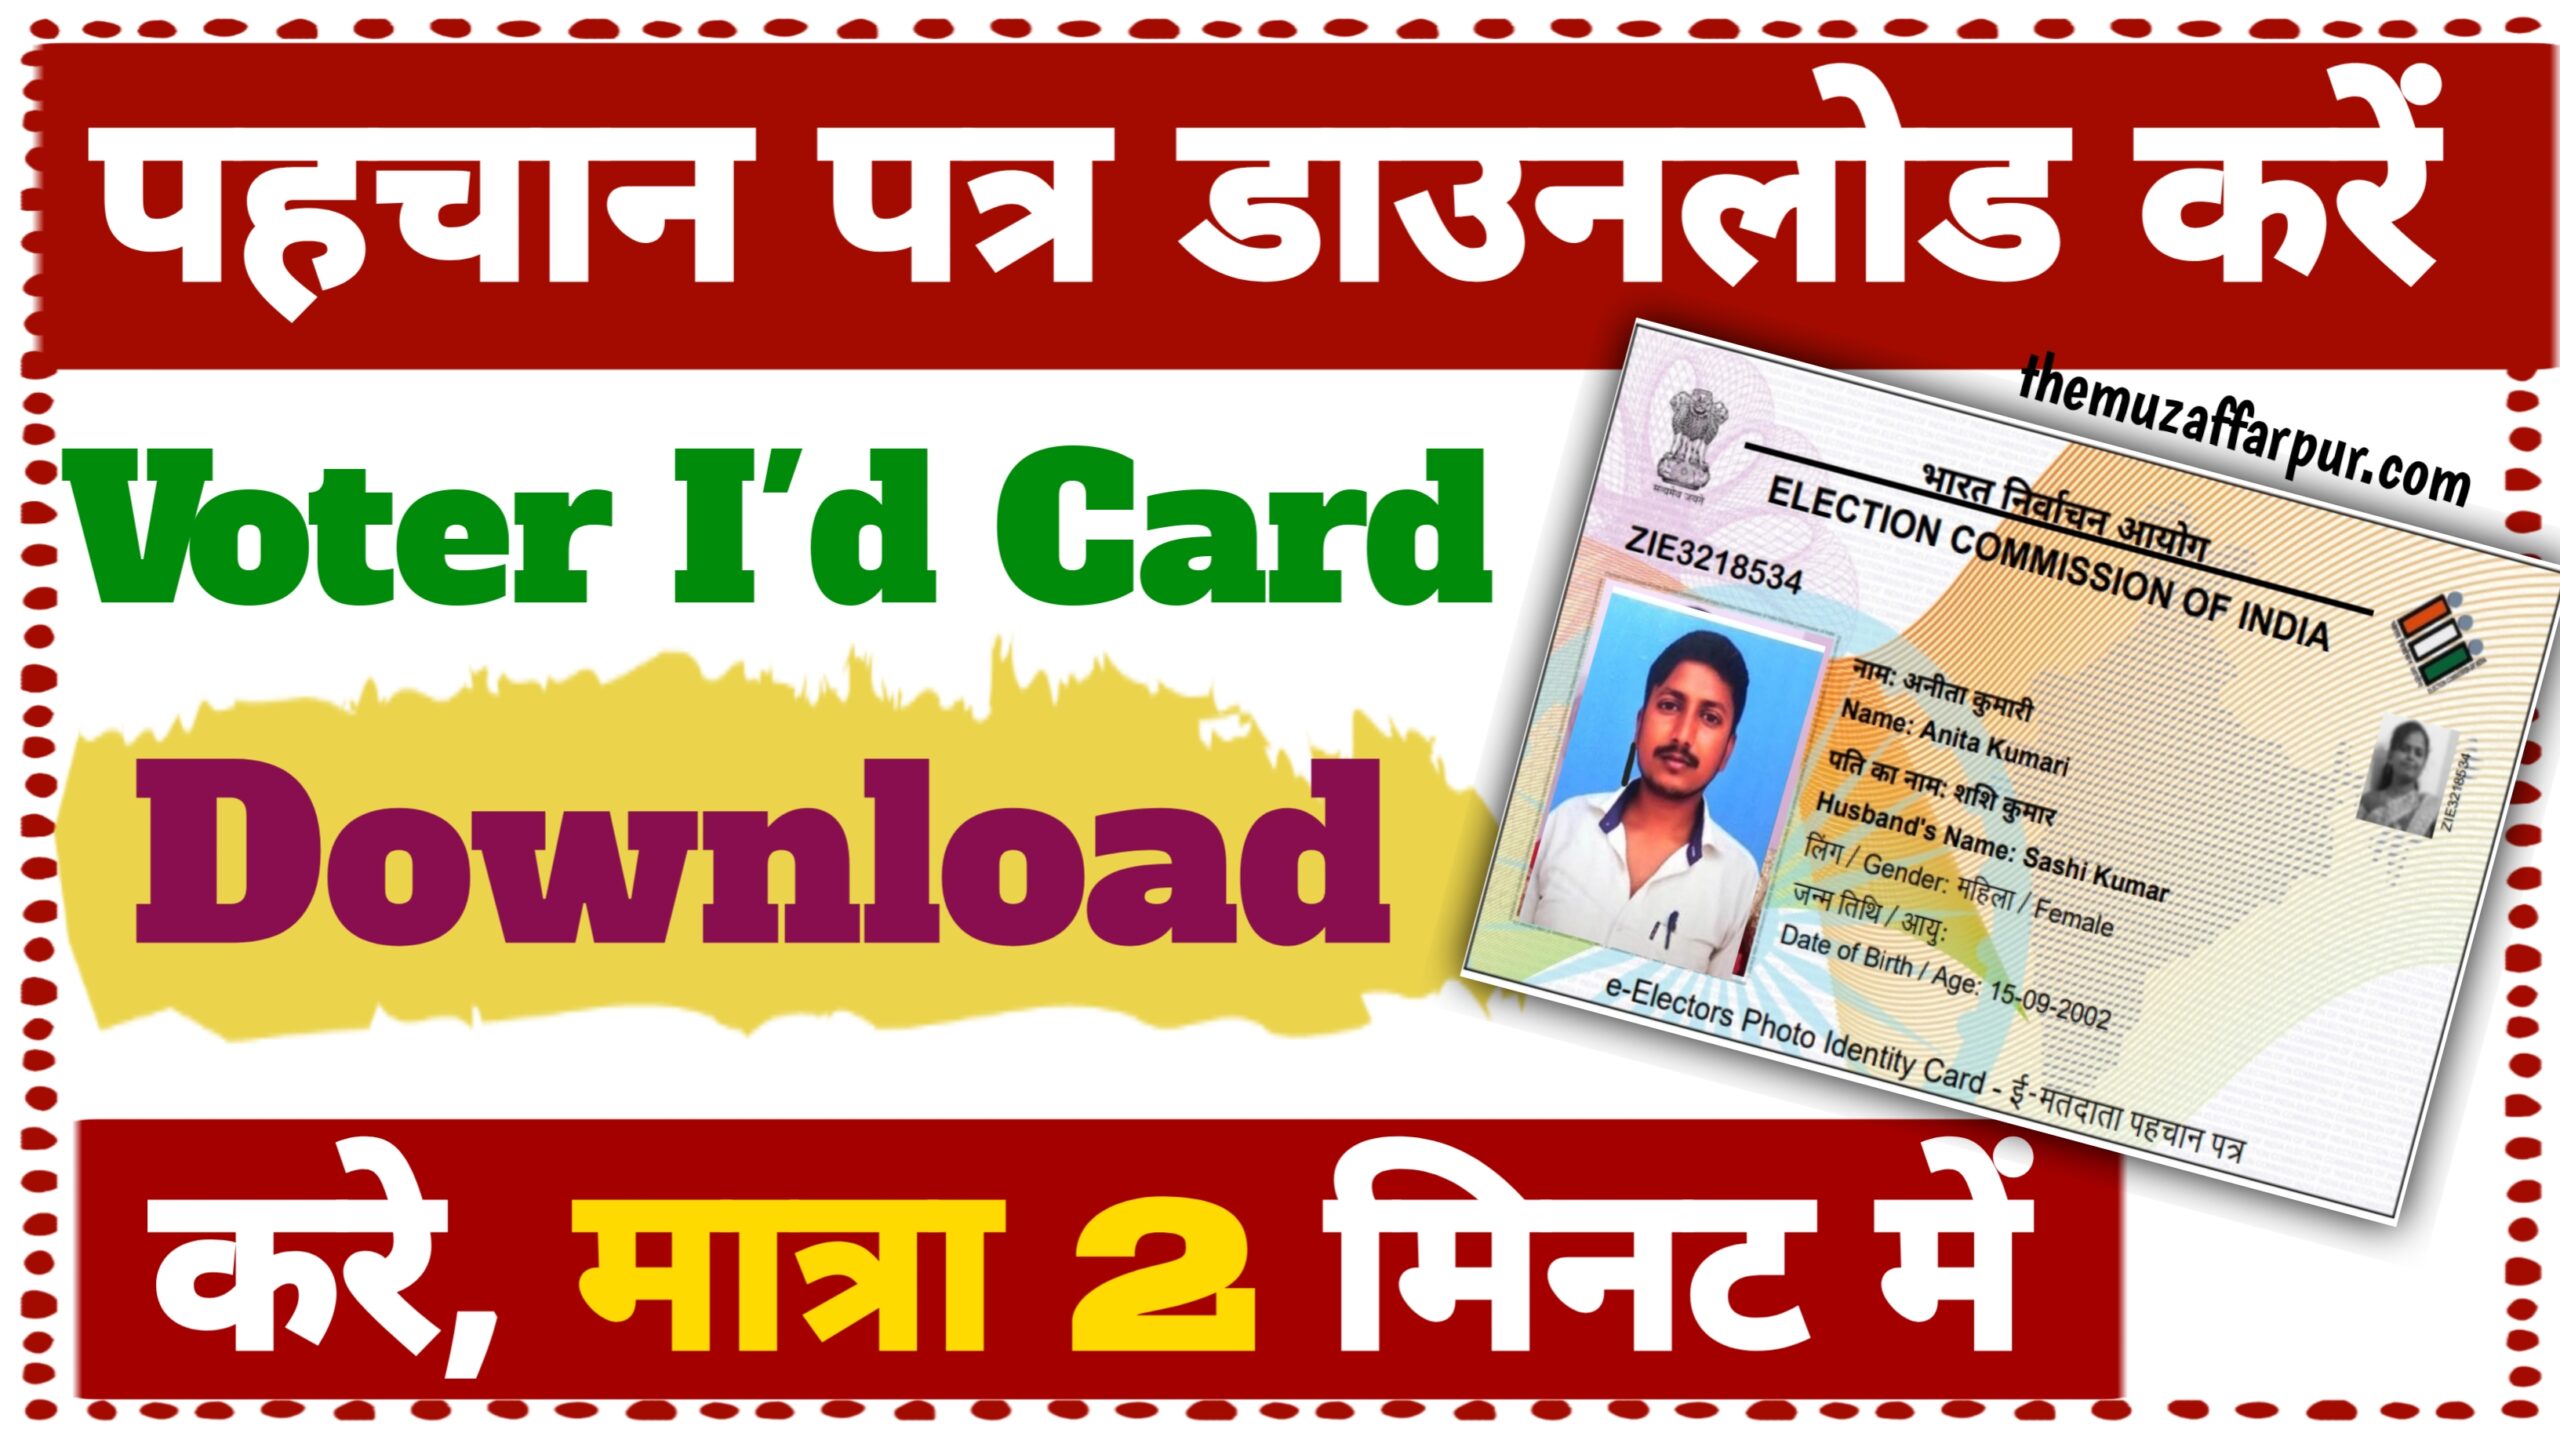 Voter ID card Update Kare 2024 : वोटर आईडी कार्ड फोटो के साथ डाउनलोड करें यहां से मात्र 5 मिनट में New Best Link